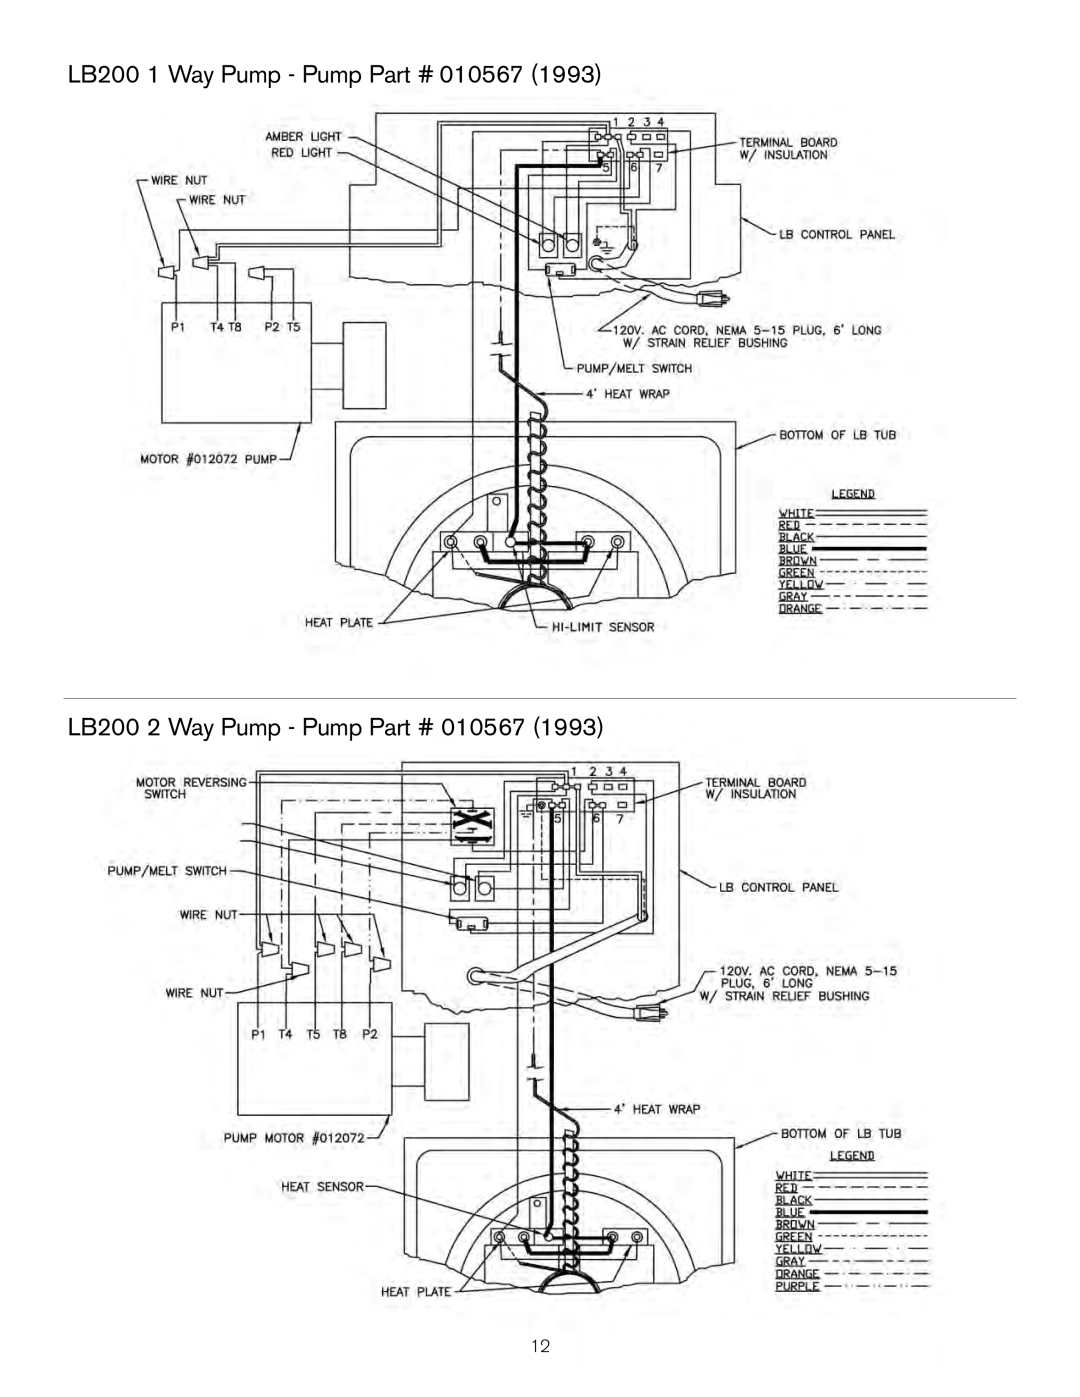 Keating Of Chicago LB-200, LB-65 user manual LB200 1 Way Pump - Pump, LB200 2 Way Pump - Pump 